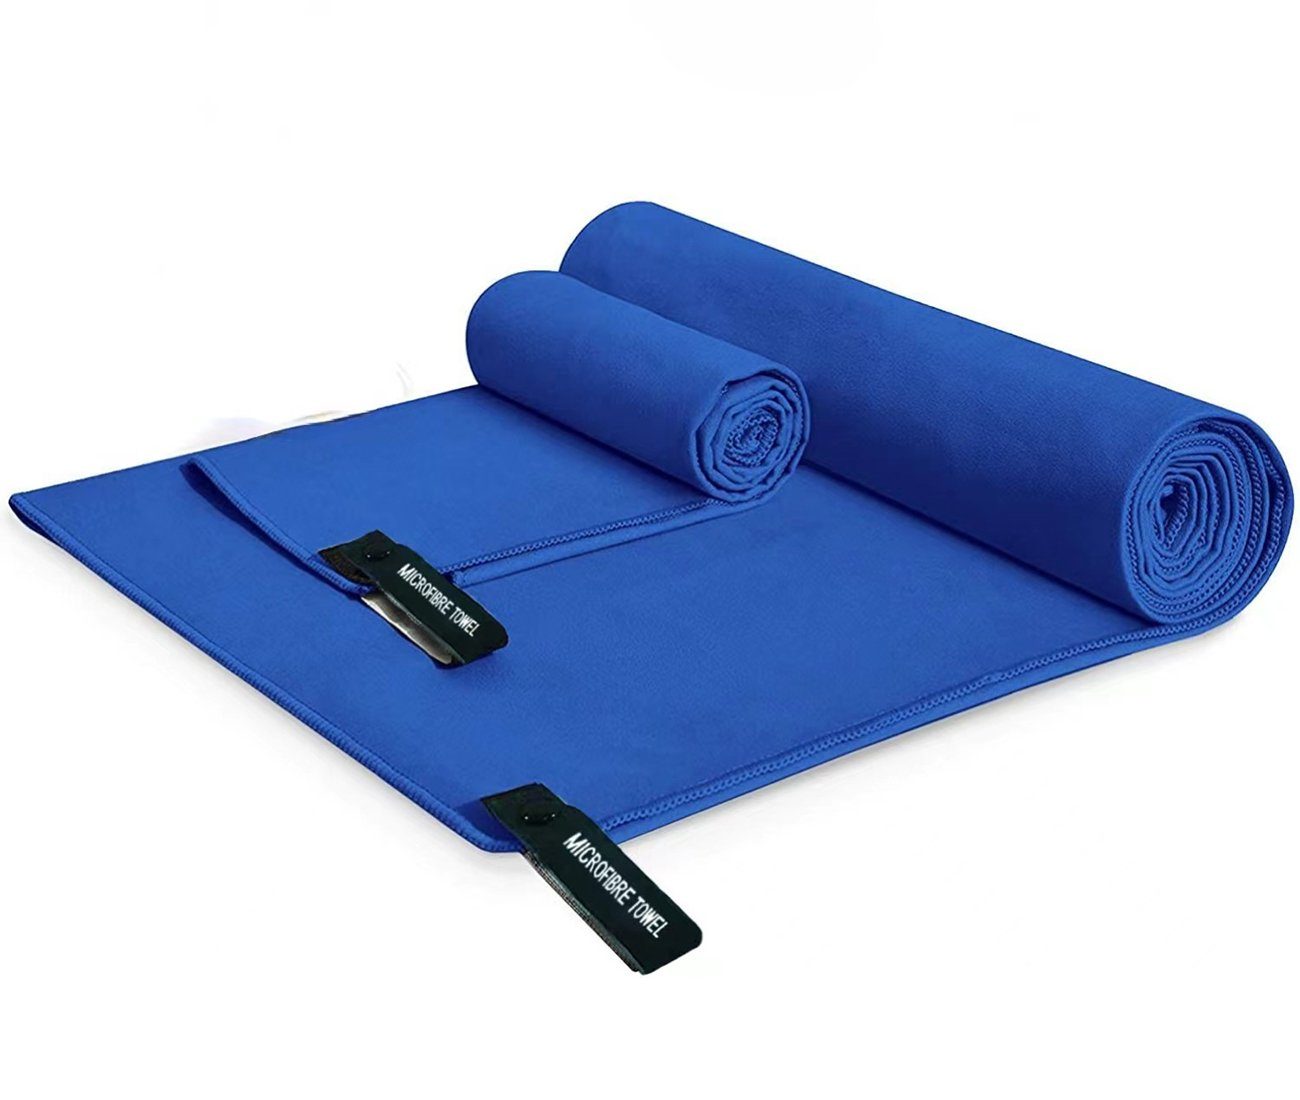 Haiaveng Handtuch Set Handtuch Set,Badetuch Groß(152x76cm)+Handtüch Klein(80x40cm), Verfügbar als Sporthandtuch Reisehandtuch Outdoor Handtuch Strandtuch blue